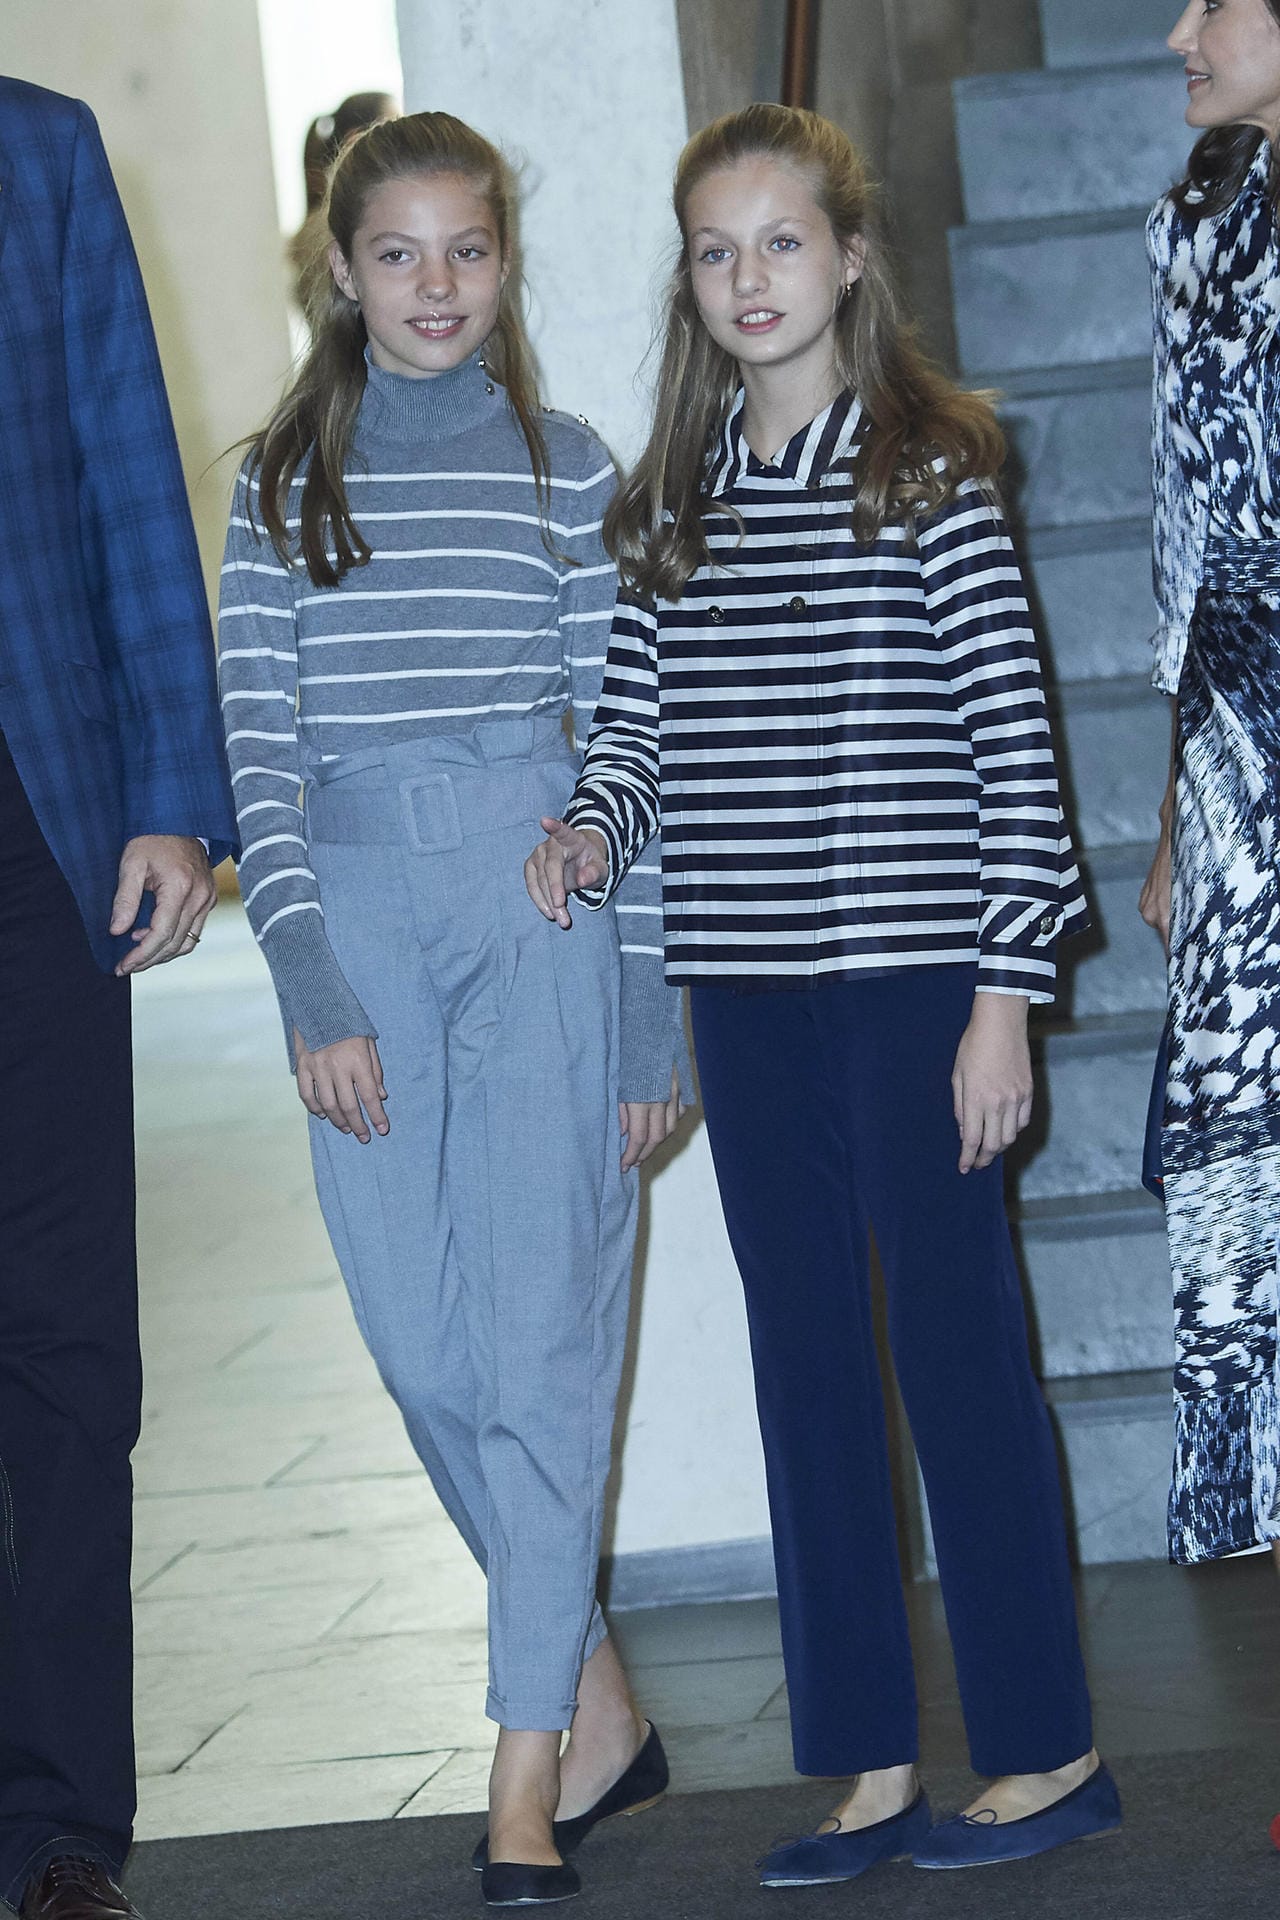 Die Prinzessinnen Sofia und Leonor von Spanien im November 2019